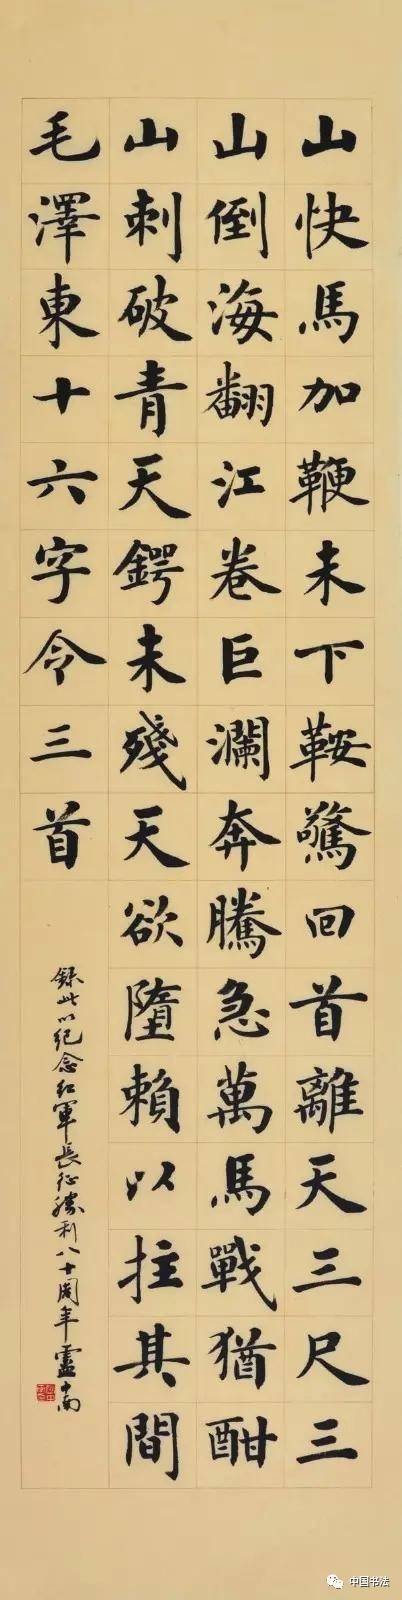 毛泽东诗词《七律·长征》